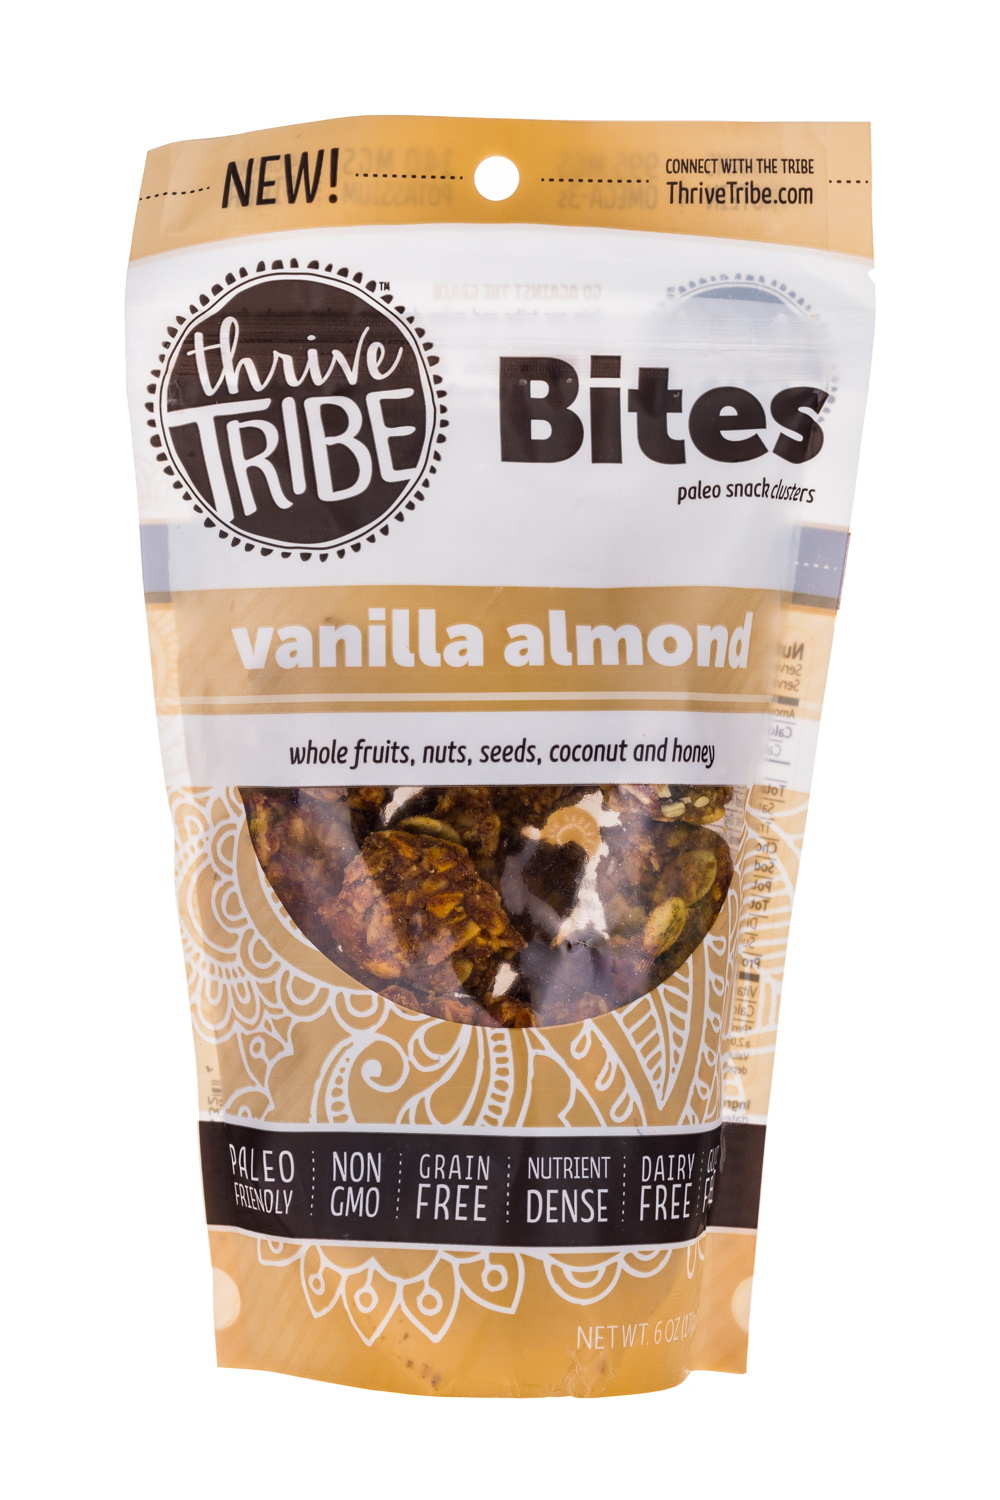 Bites-Vanilla almond